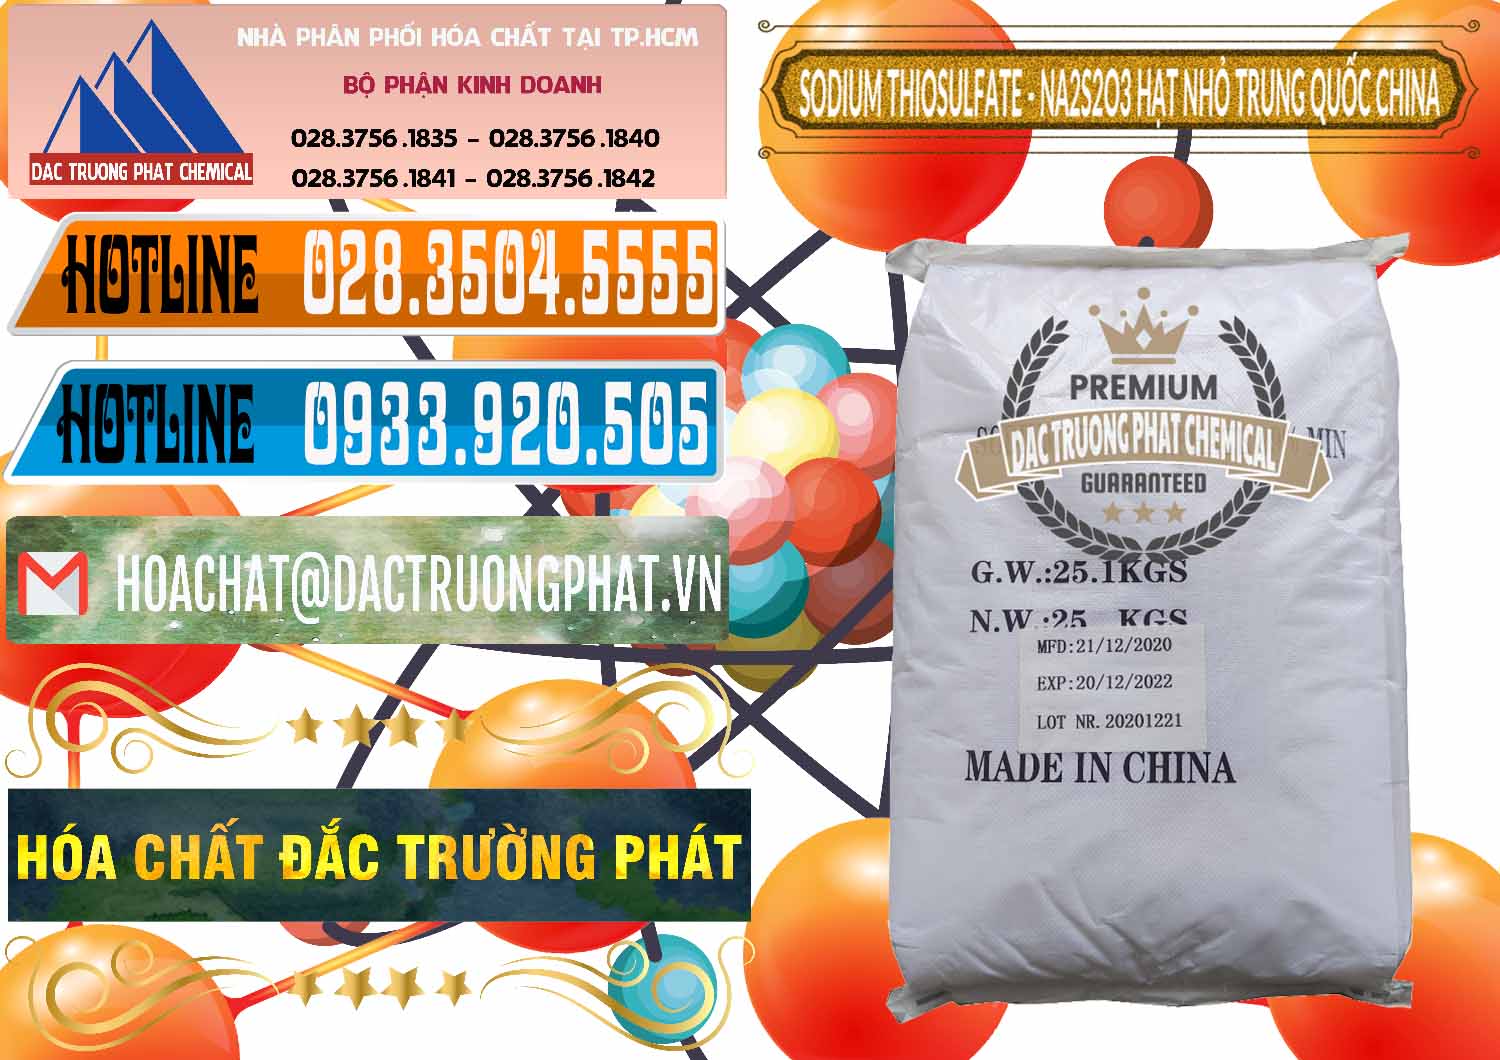 Công ty bán và cung cấp Sodium Thiosulfate - NA2S2O3 Hạt Nhỏ Trung Quốc China - 0204 - Chuyên cung ứng & phân phối hóa chất tại TP.HCM - stmp.net